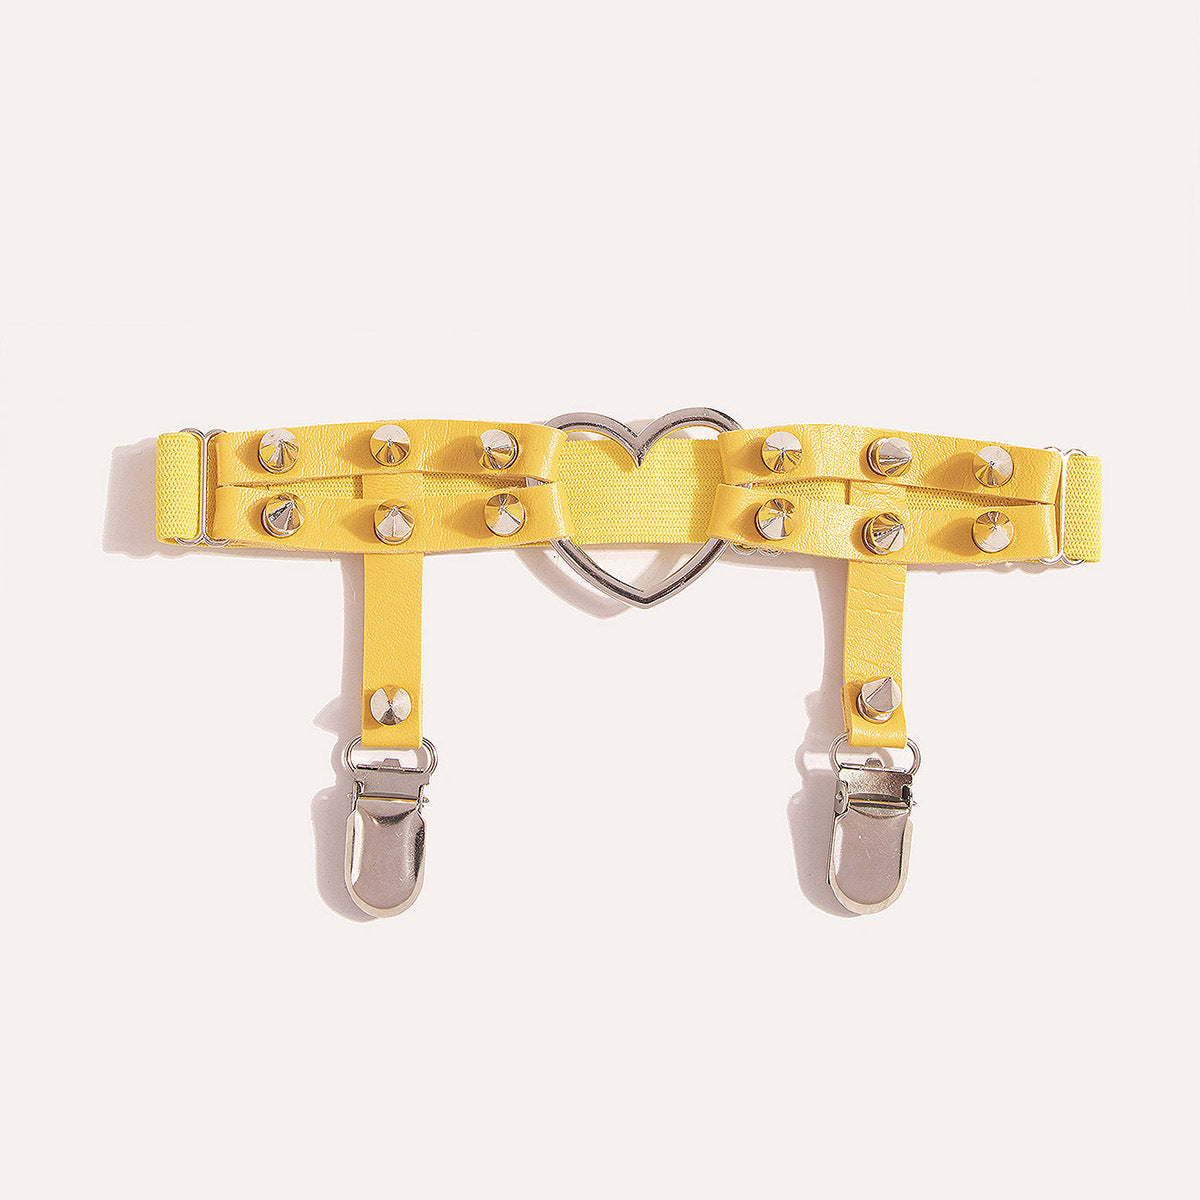 Harness na udo z kolcami - Żółty / Uniwersalny